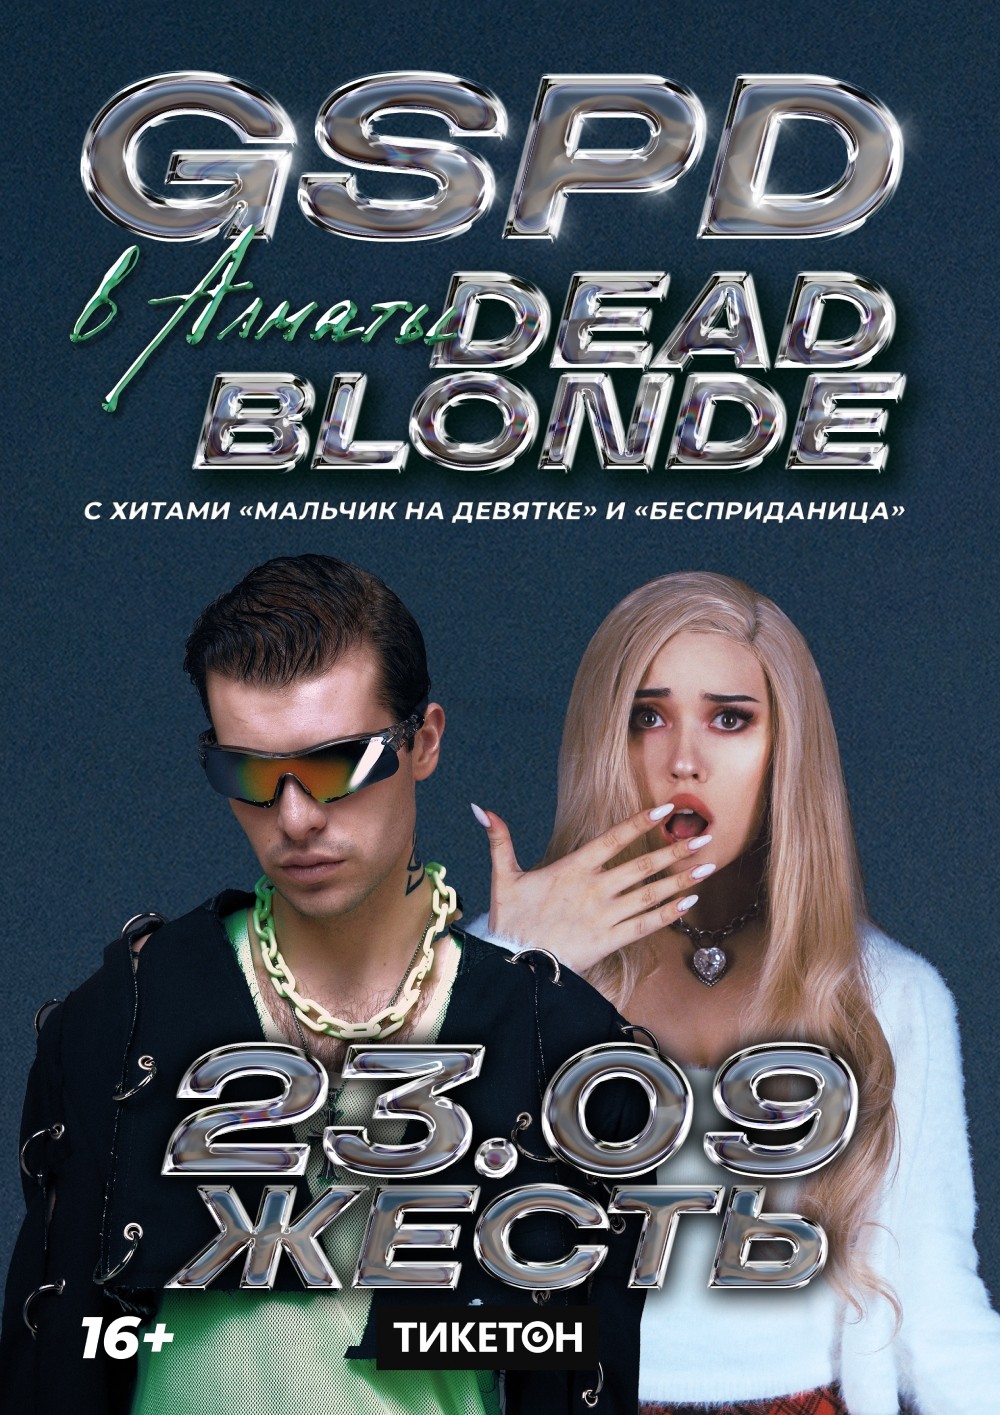 Dead blonde концерт спб. Dead blonde 2018. Концерт Dead blonde Ростов на Дону.